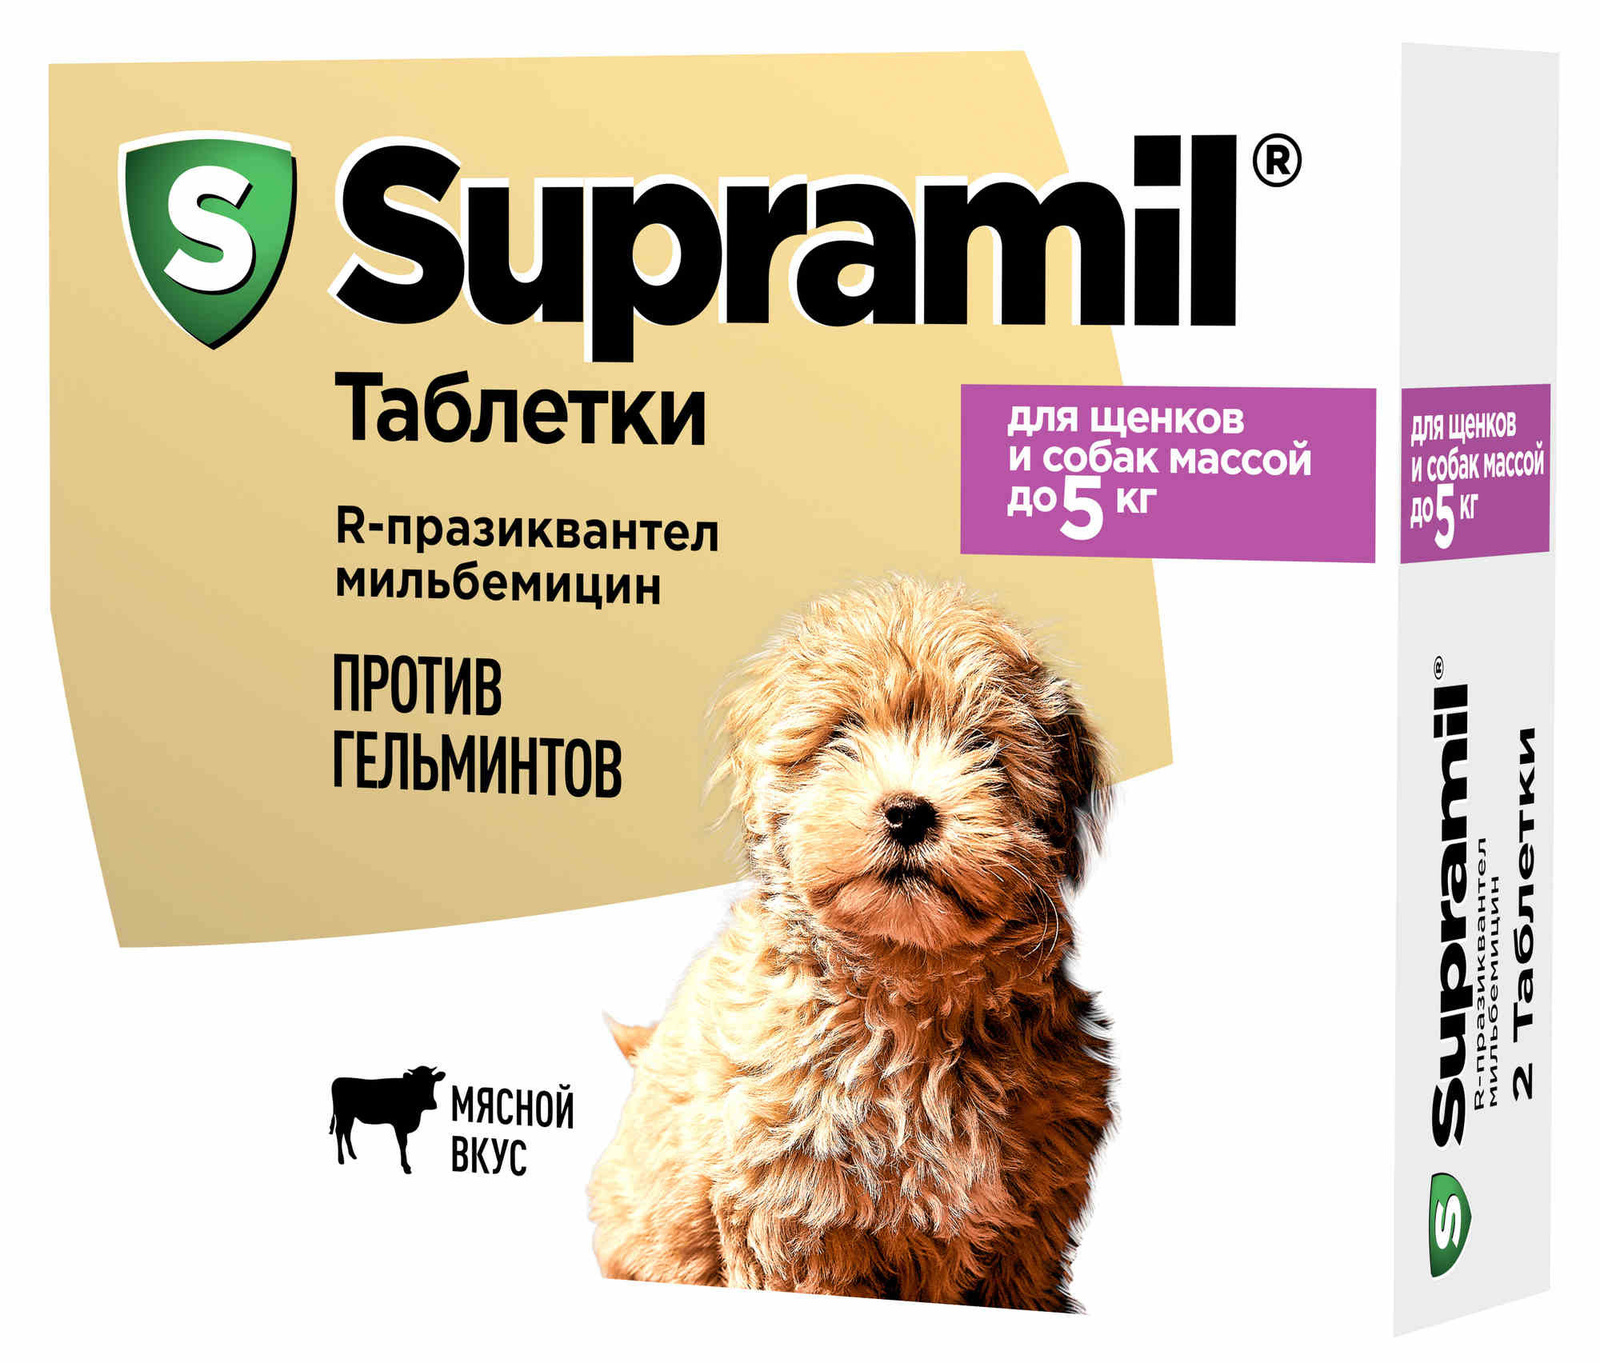 Астрафарм антигельминтный препарат Supramil  для щенков и собак массой до 5 кг, таблетки (2 таб.) Астрафарм антигельминтный препарат Supramil  для щенков и собак массой до 5 кг, таблетки (2 таб.) - фото 1